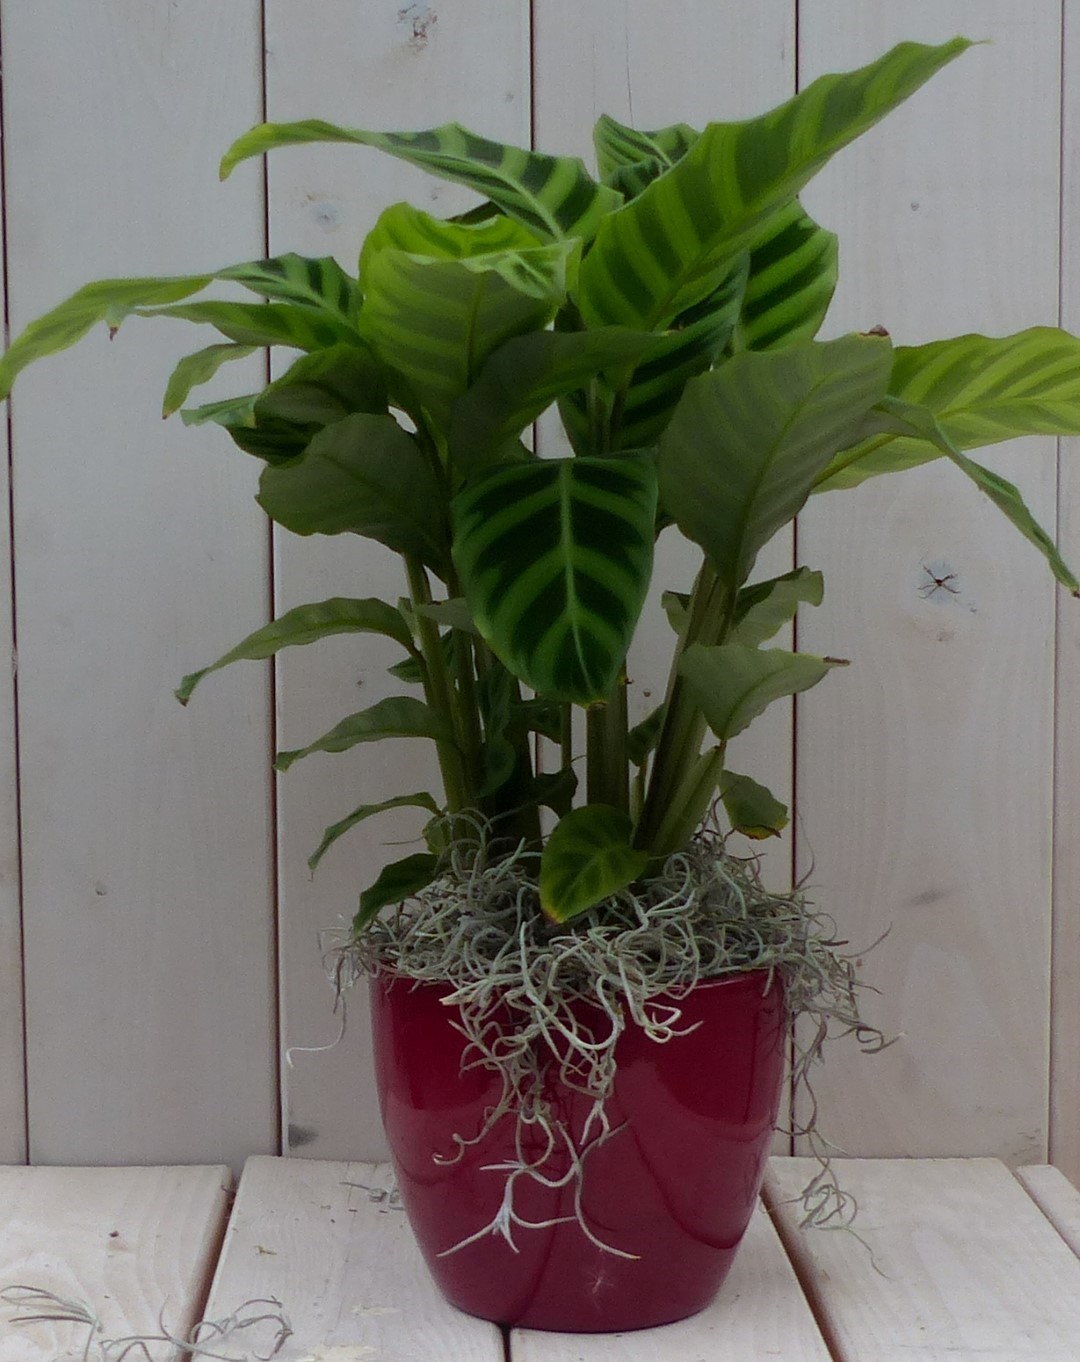 Calathea groen blad rode pot 40 cm